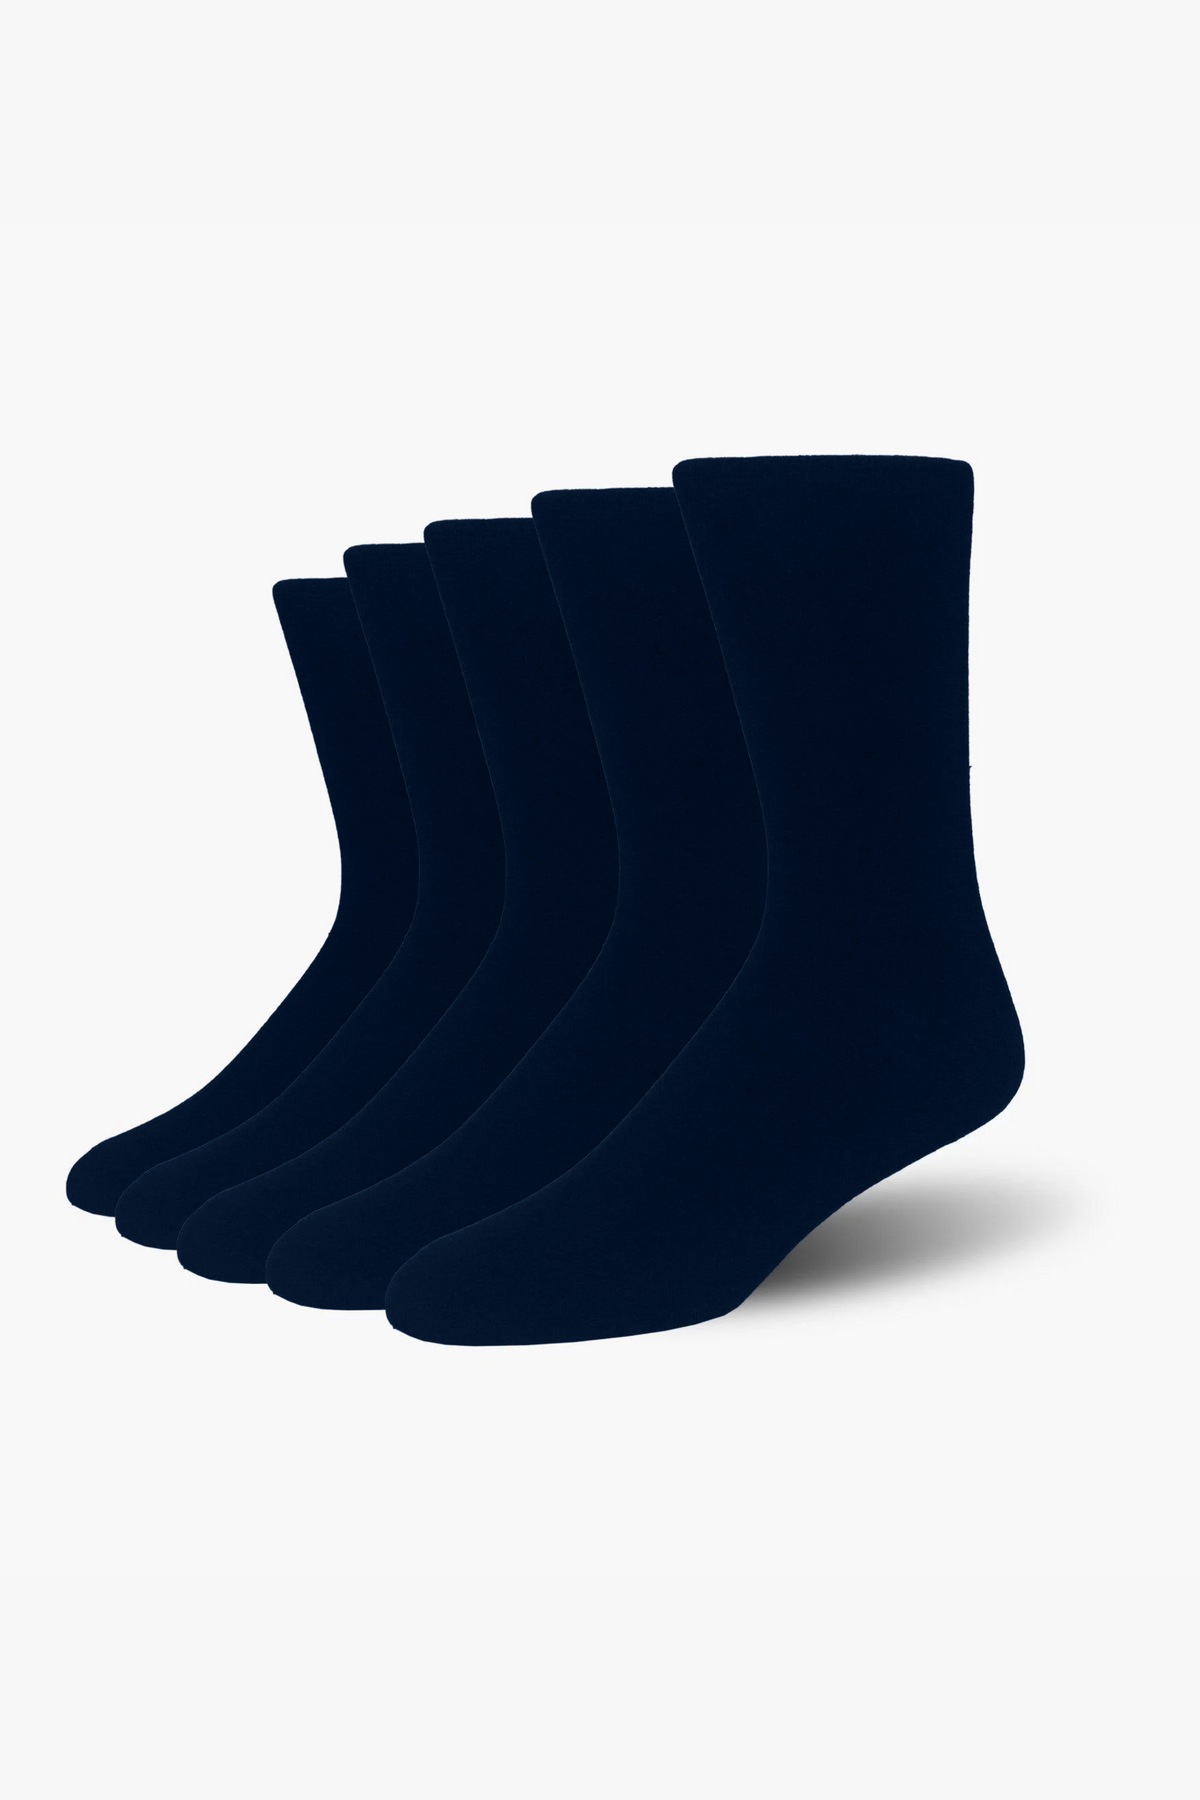 Mercerized Solid Socks (Pack of 5) Plain